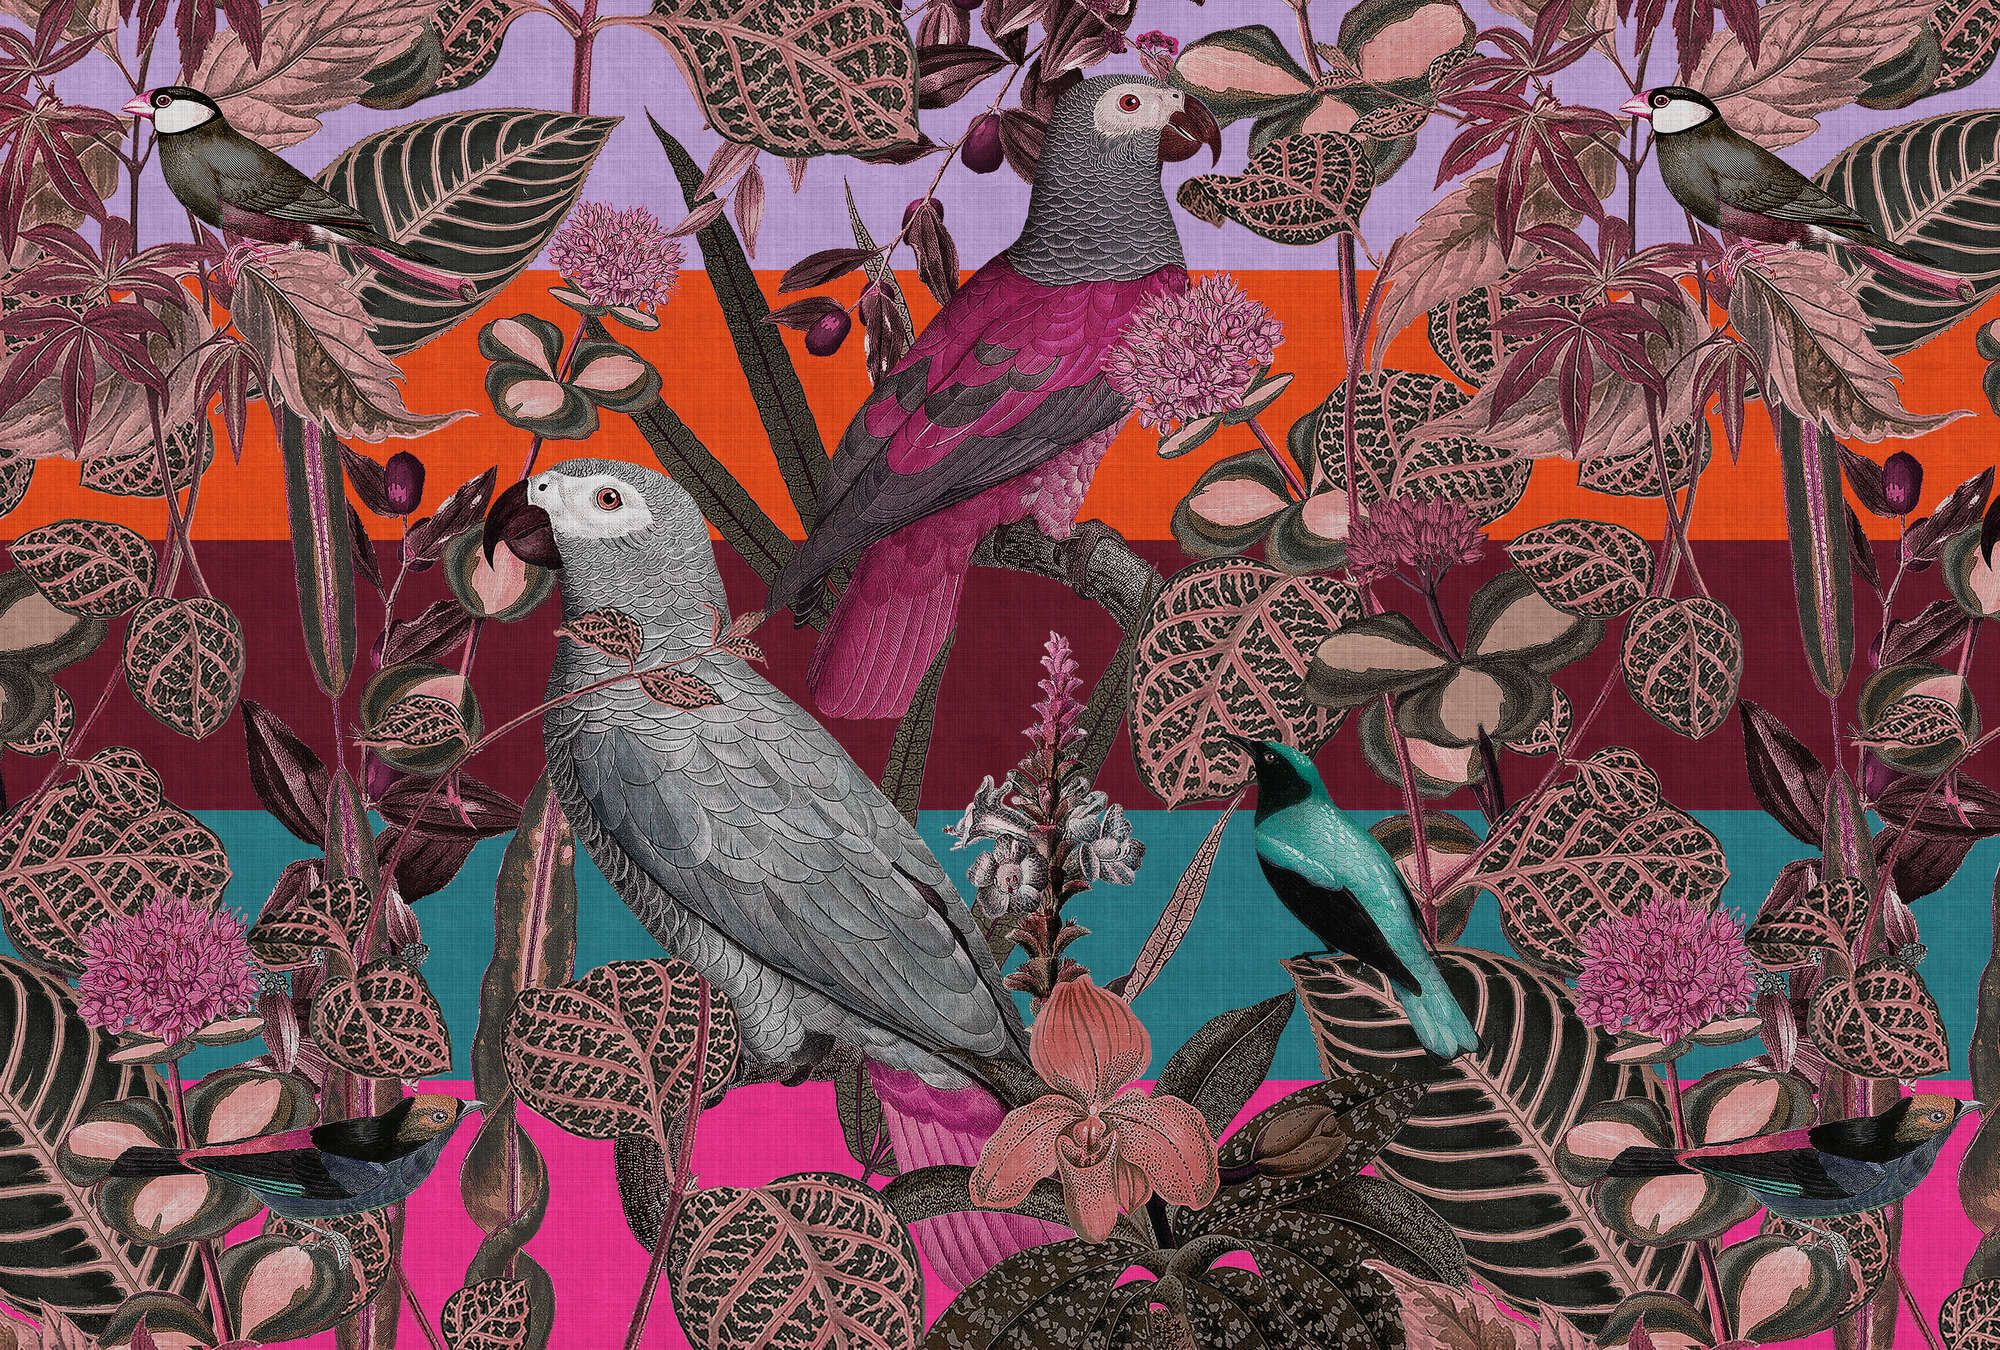             Fototapete »amazona 1« - Exotische Vögel – Violett | Leicht strukturiertes Vlies
        